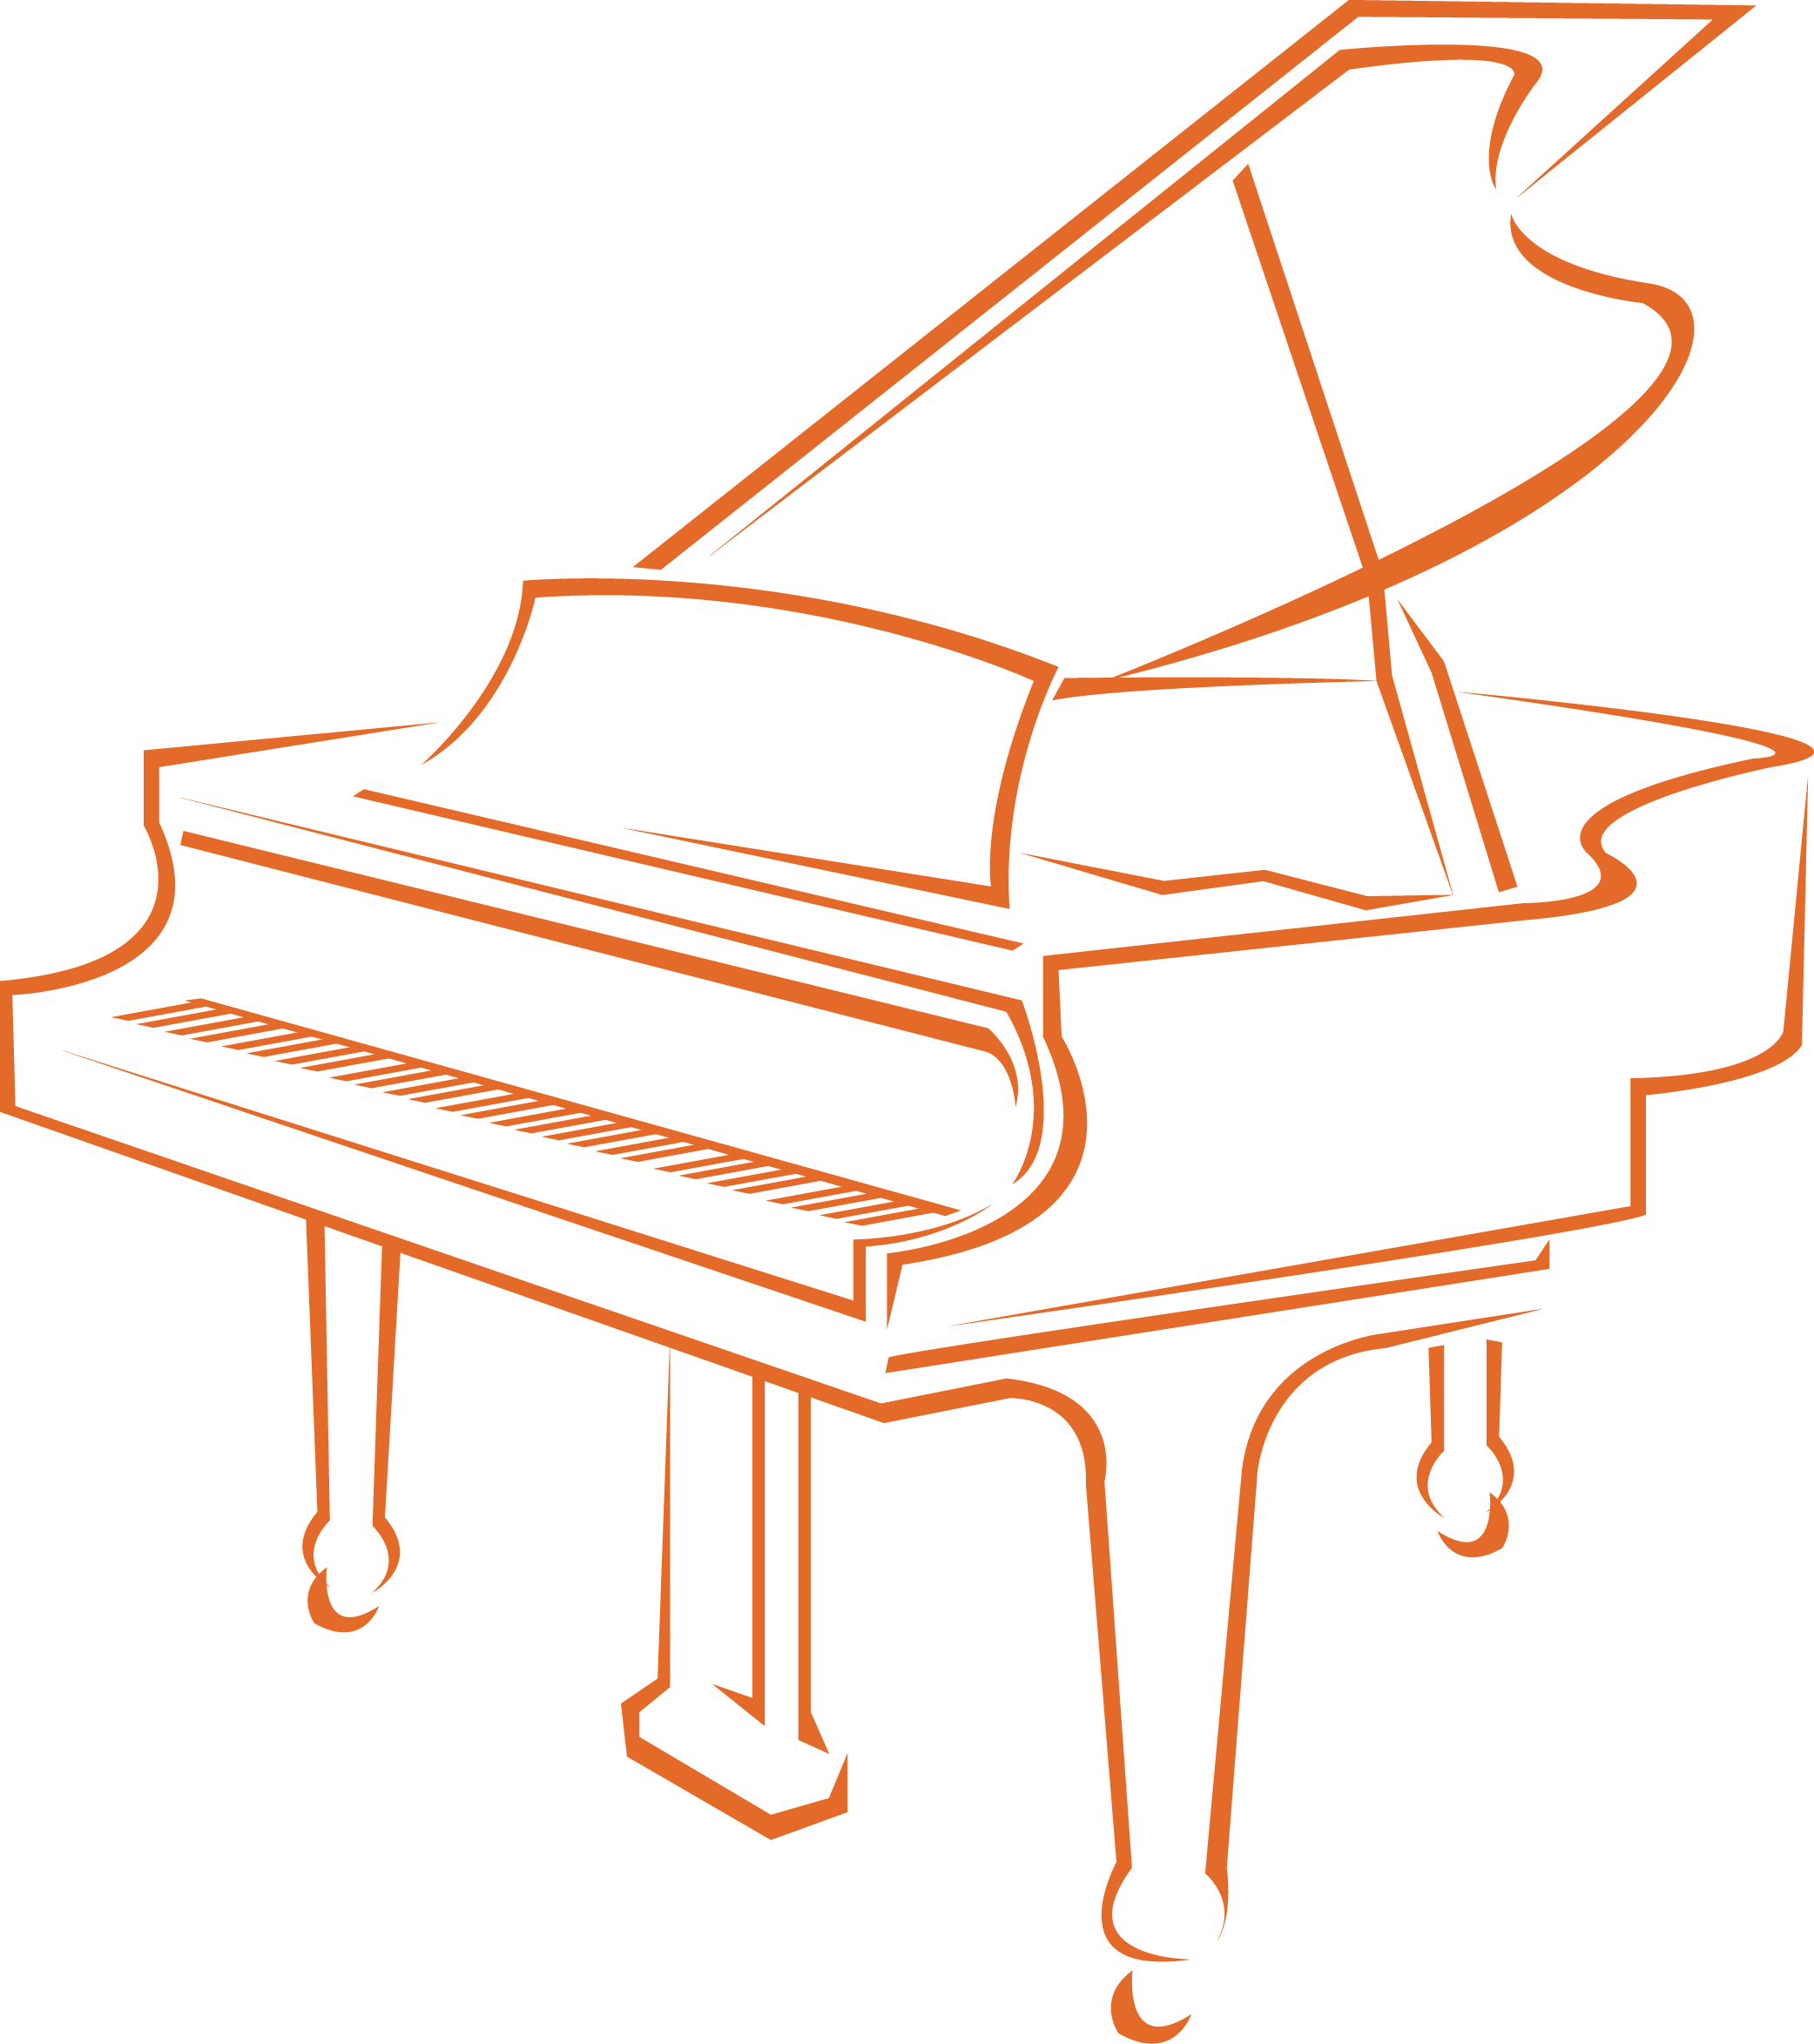 clipart piano teaching piano